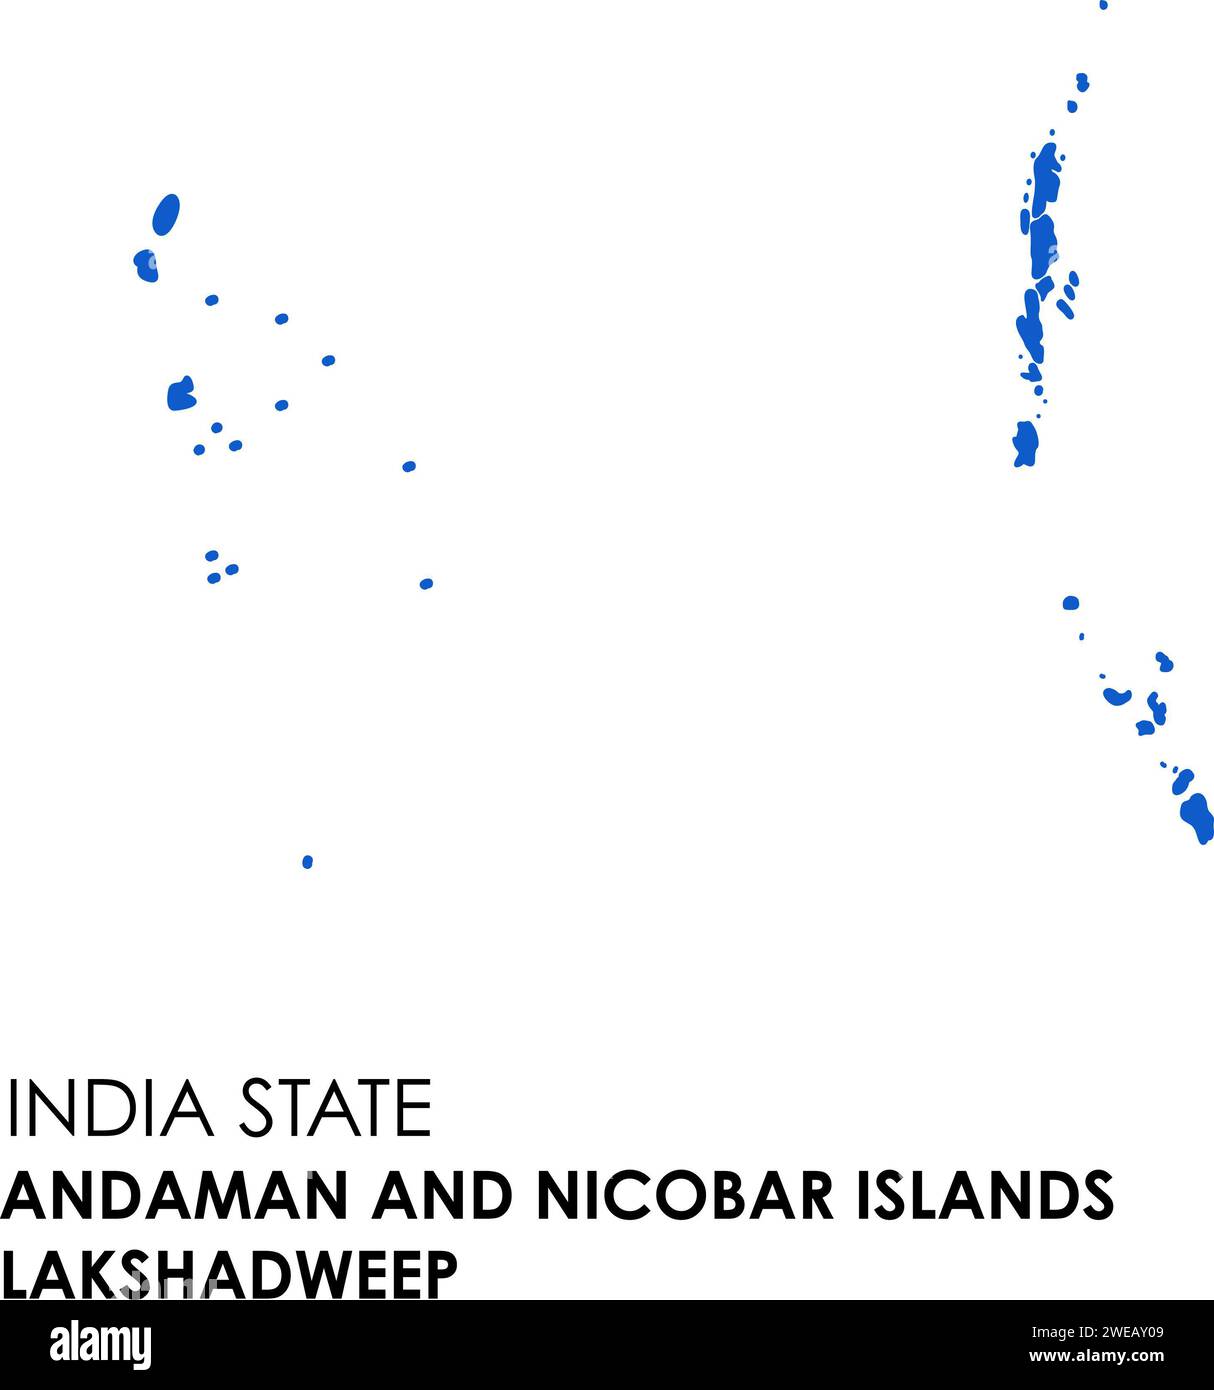 Andaman et Lakshadweep carte de l'état indien. Illustration de la carte Andaman et Lakshadweep. Banque D'Images